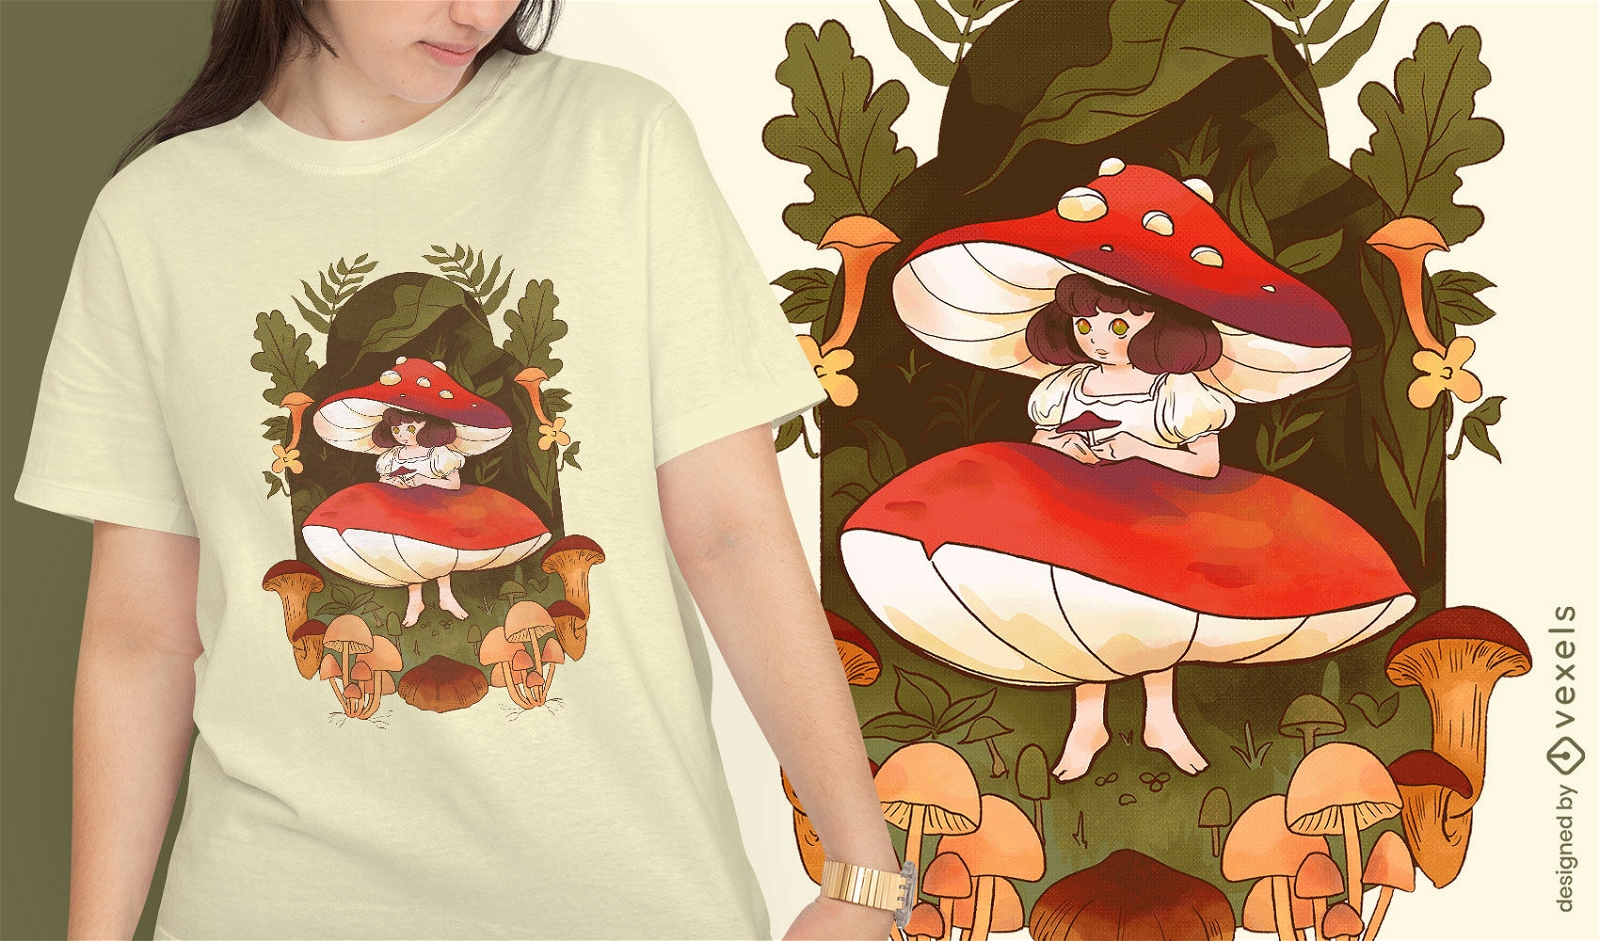 Diseño de camiseta de fantasía de chica hongo.